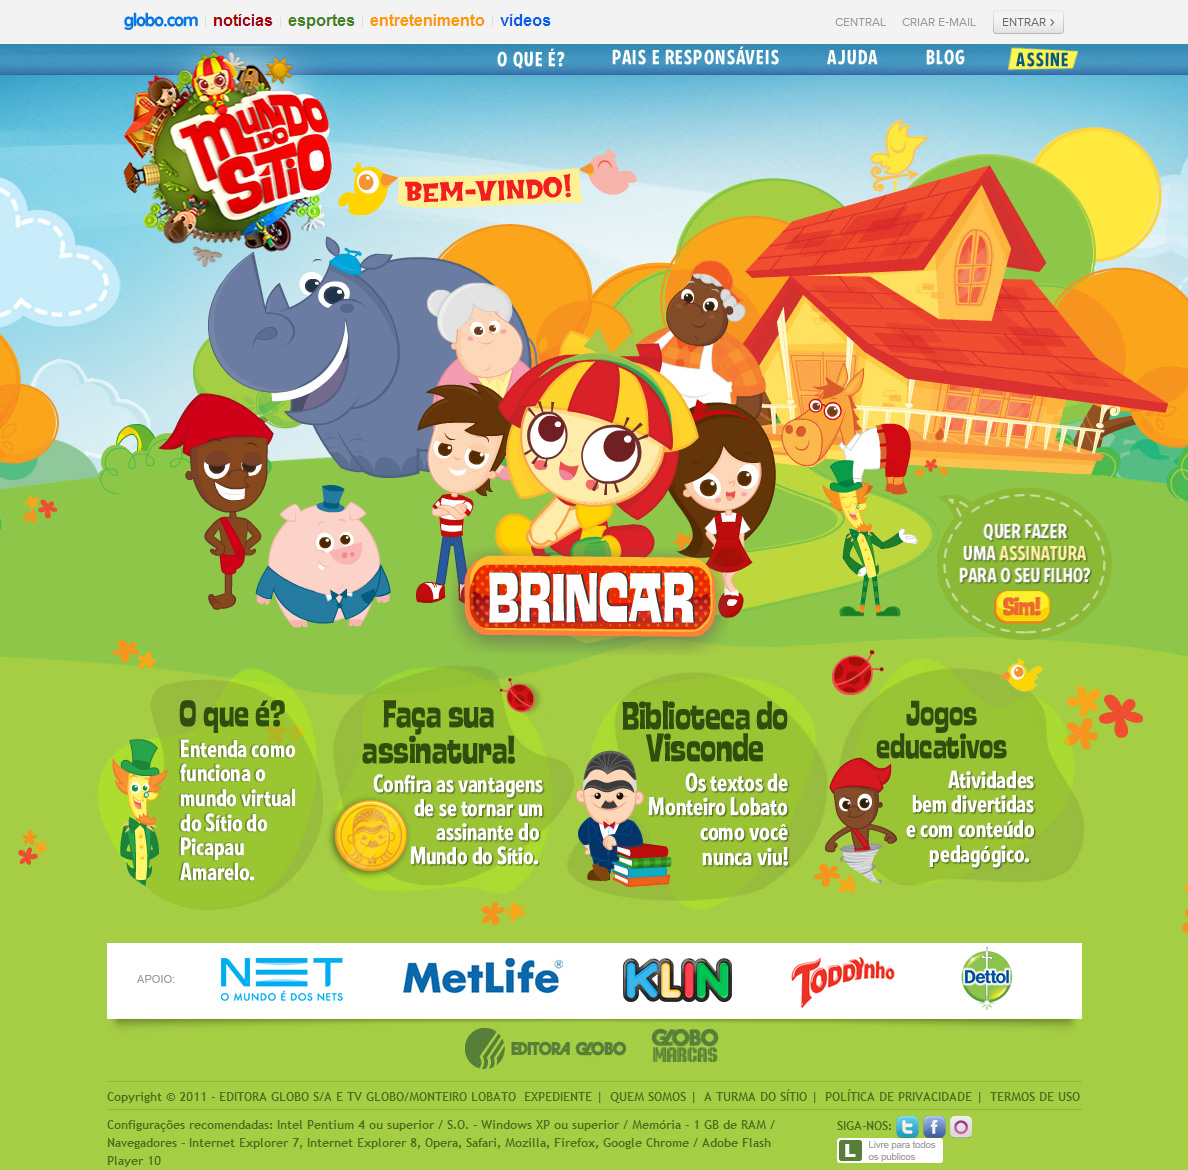 mundodositio，巴西一家幼儿教育网站，目前已开发20多个益智游戏。